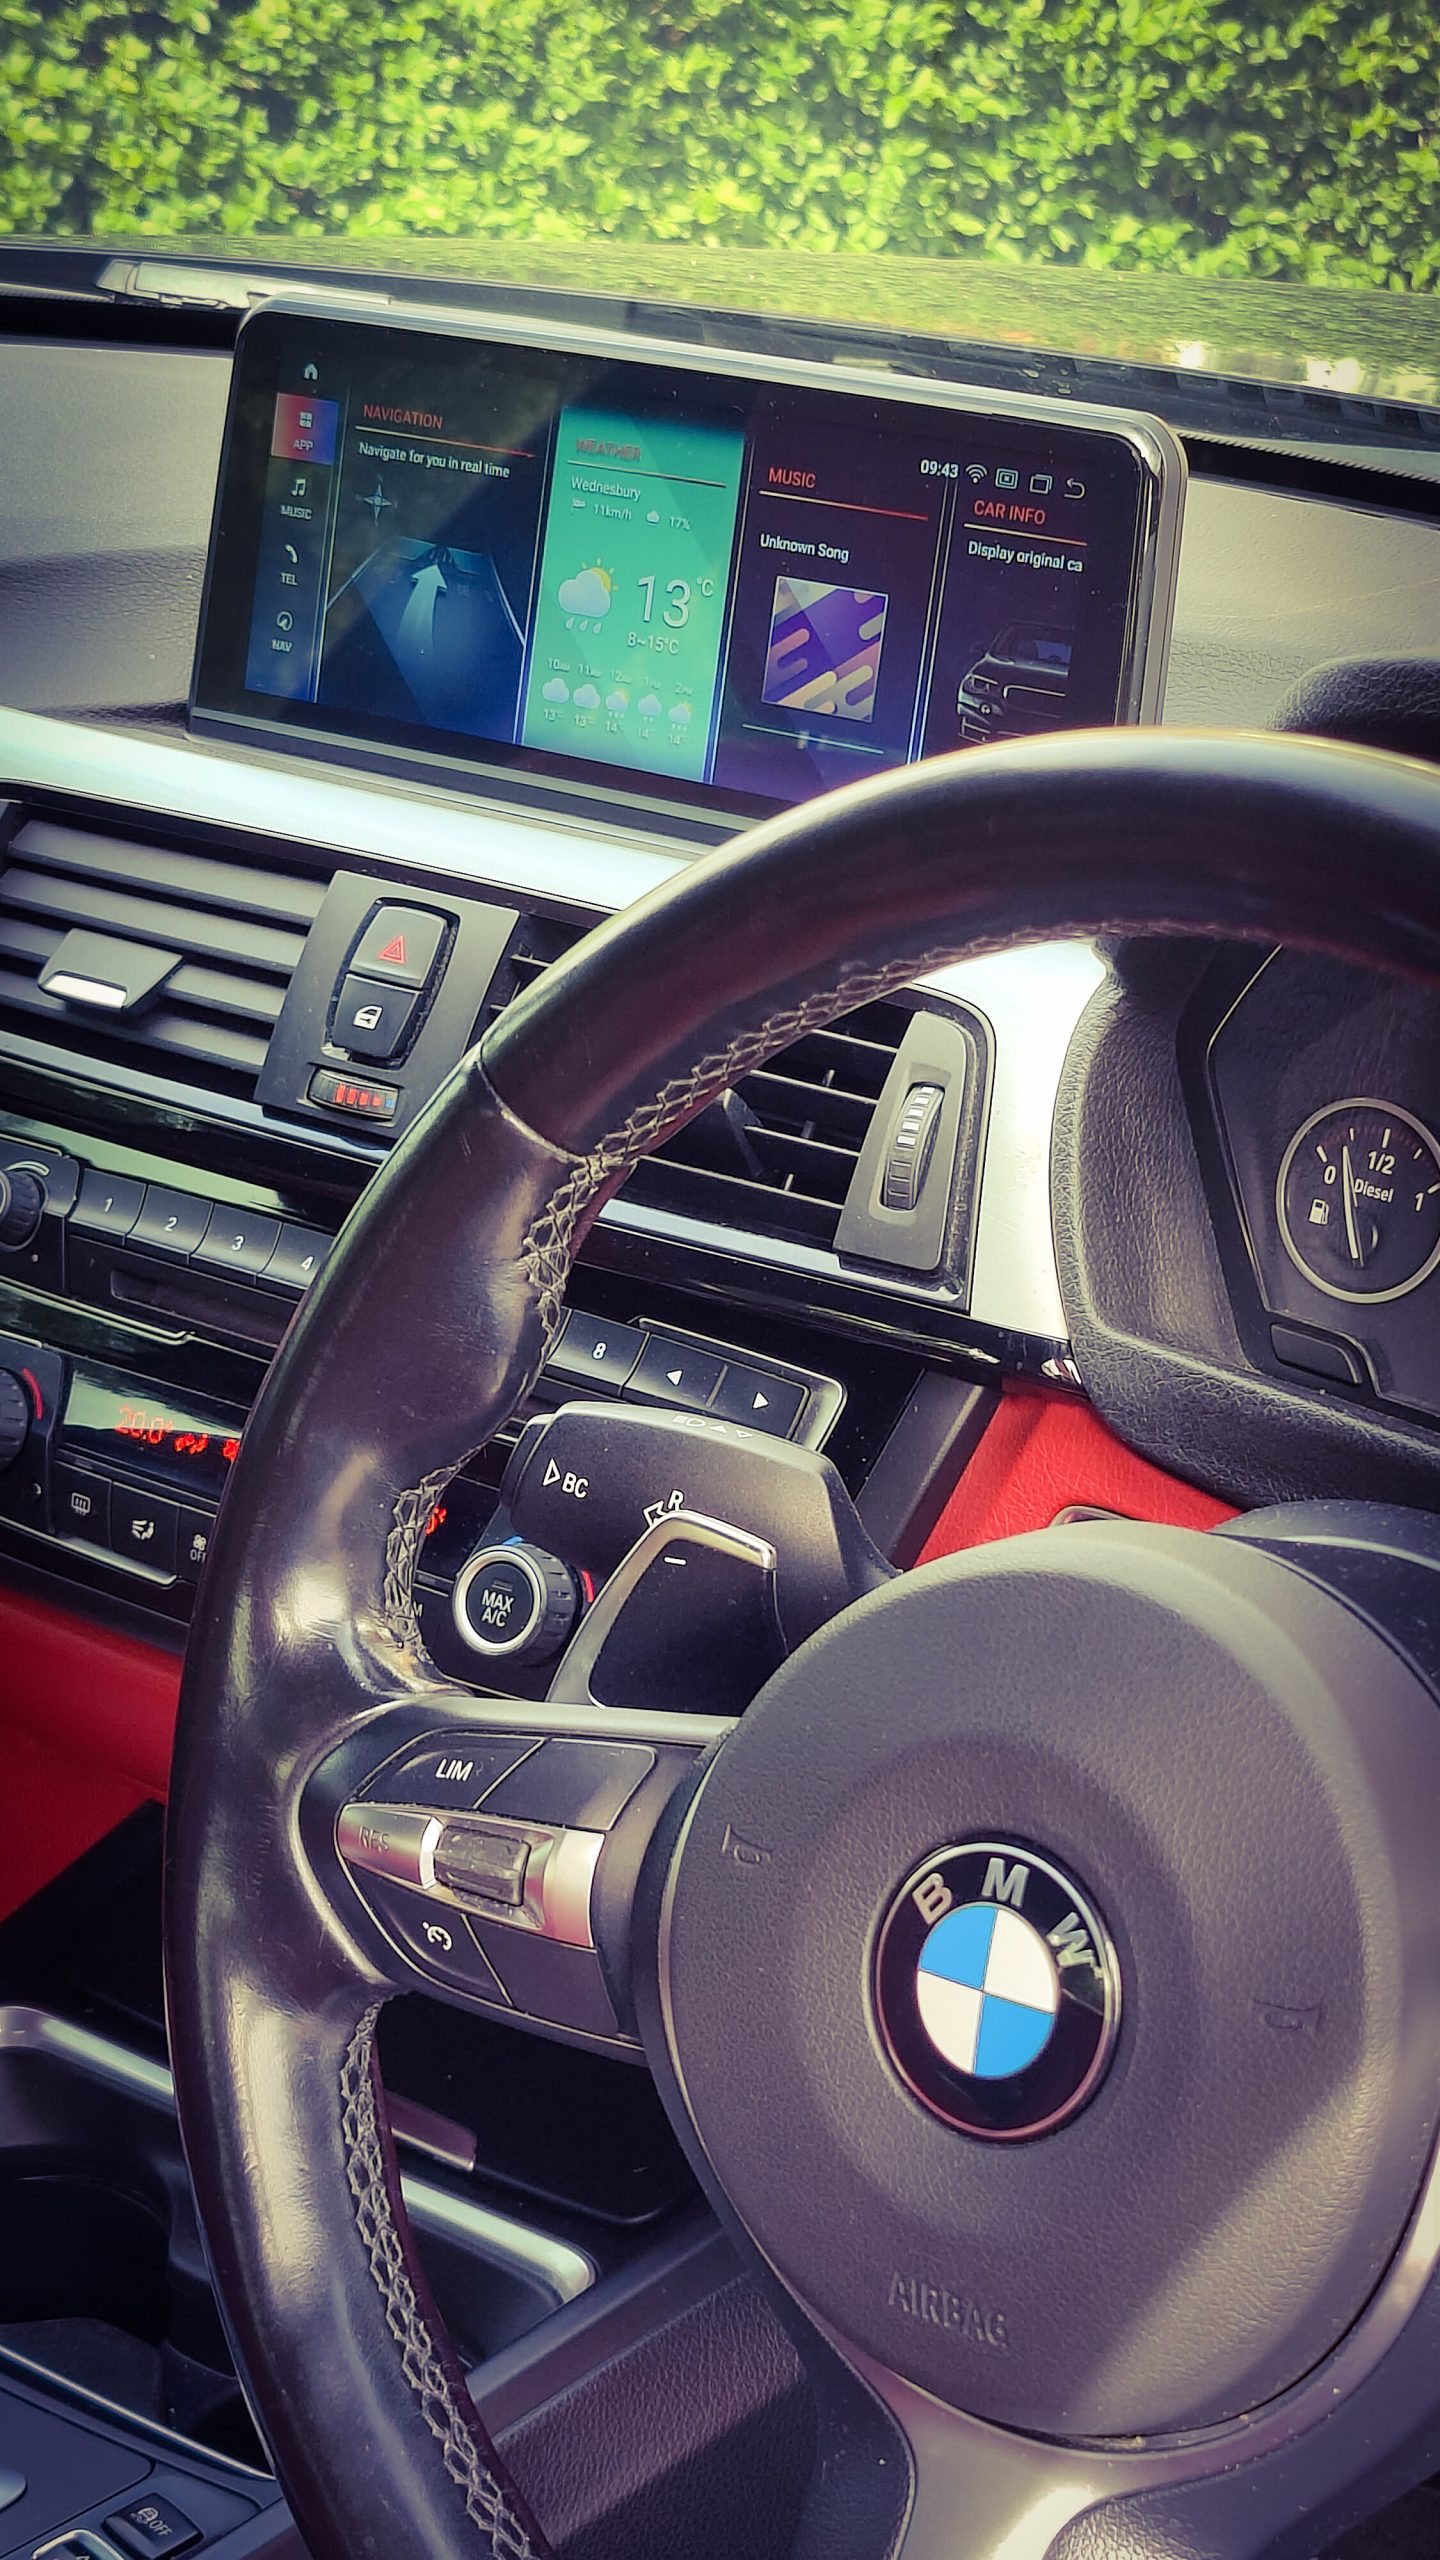 BMW 3 & 4 Series Wireless CarPlay & Android Auto Touch Screen Multimedia  Display Upgrade NBT/EVO F30 F31 F32 F33 F34 F36